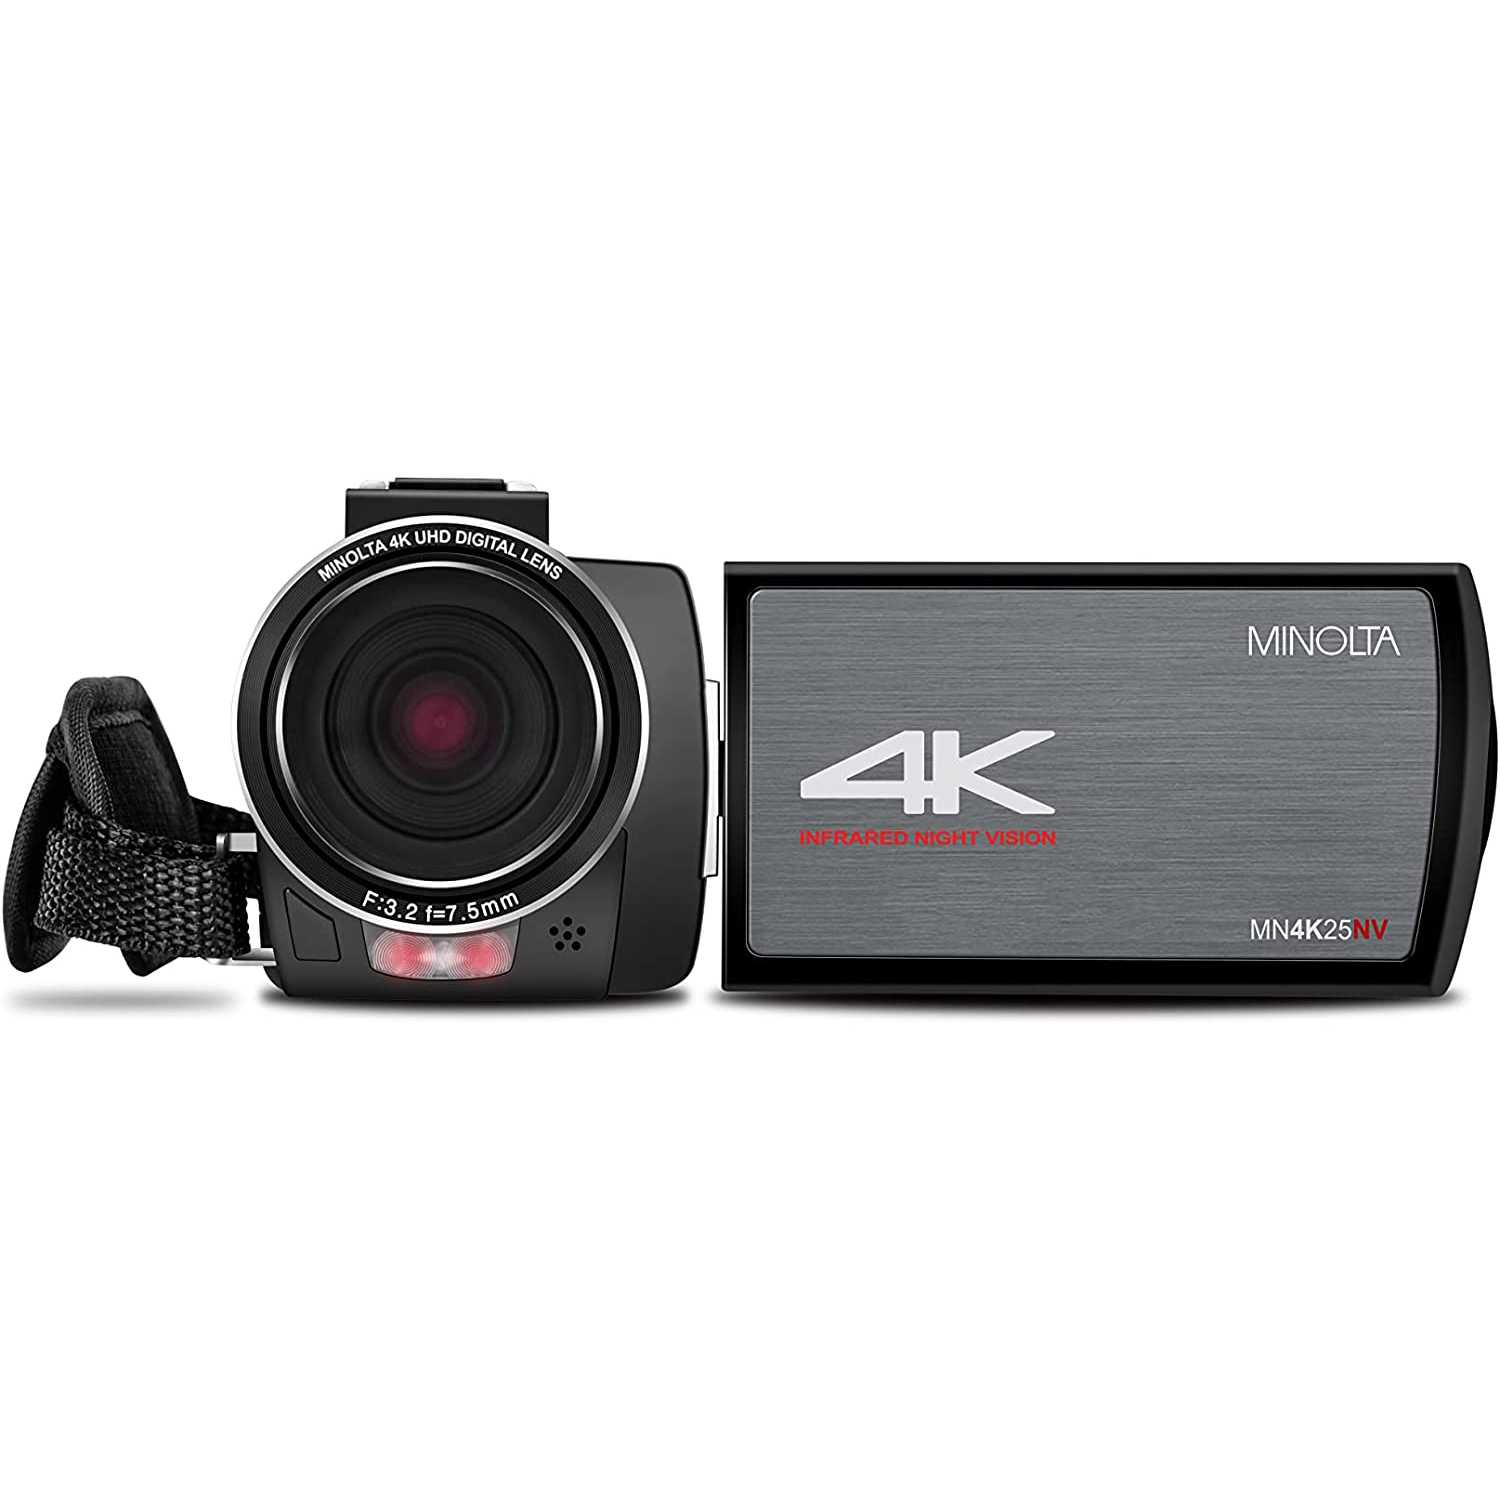 Photos - Camcorder Konica Minolta Minolta MN4K25NV 4K Ultra HD 30 MP Night Vision   MN4K25NV (Black)